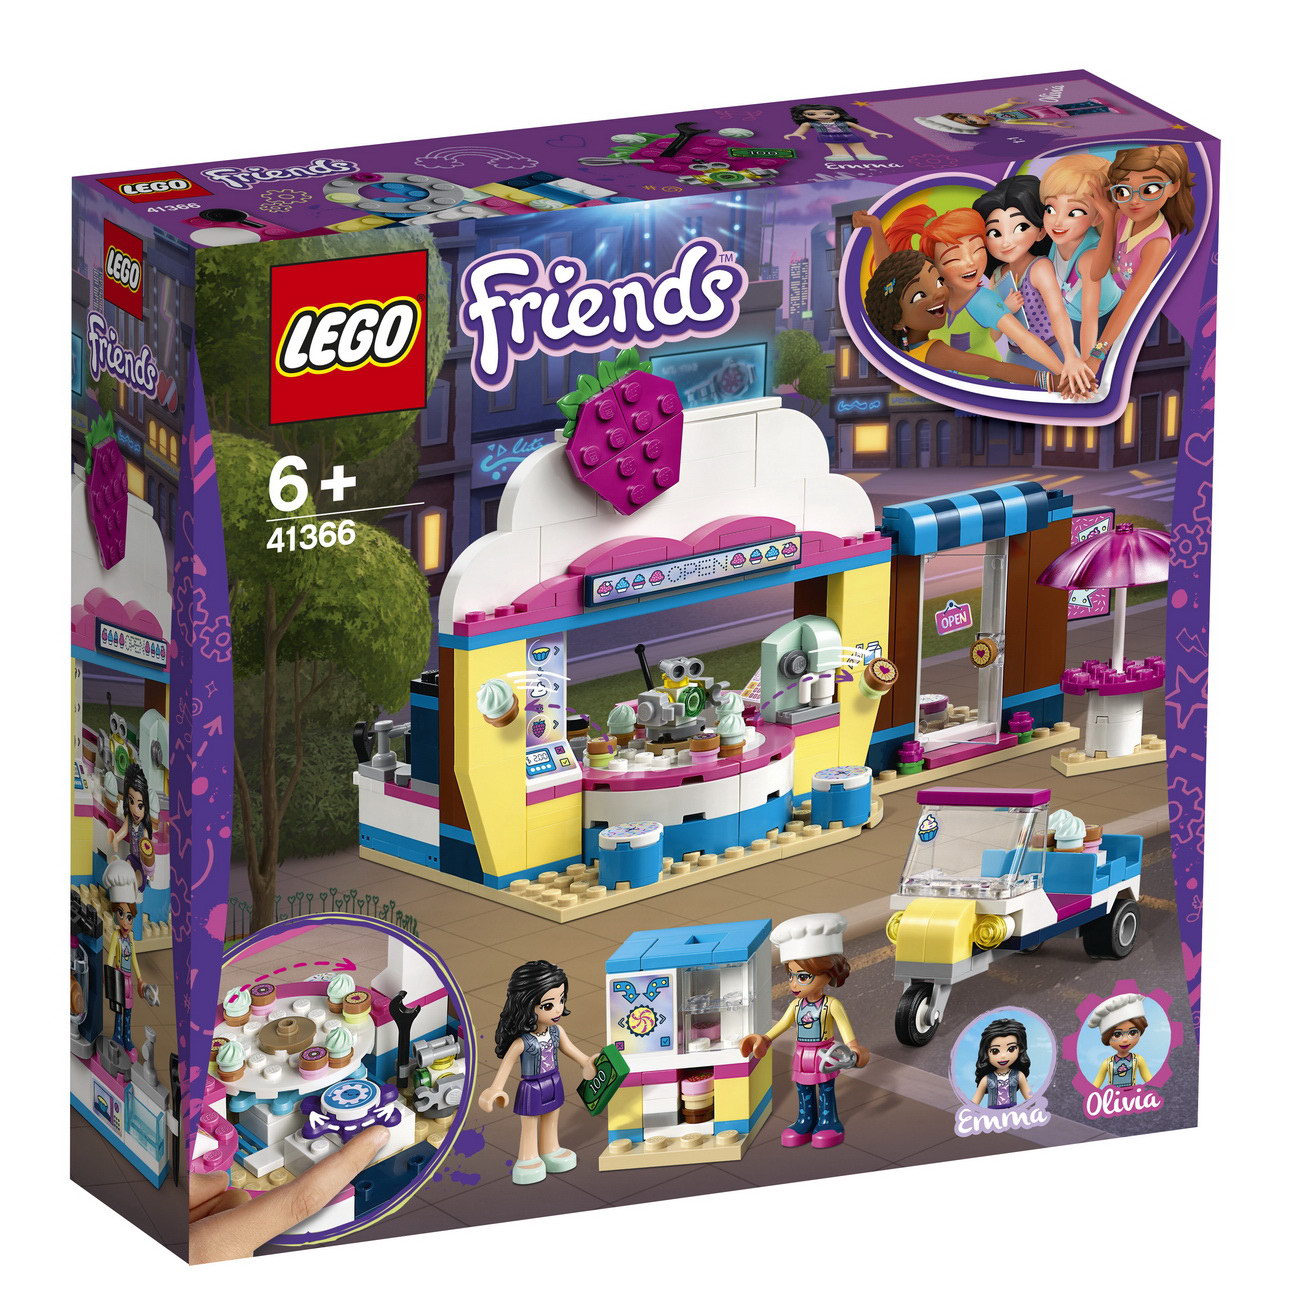 LEGO Friends 41366 - Olivias Cupcake-Café